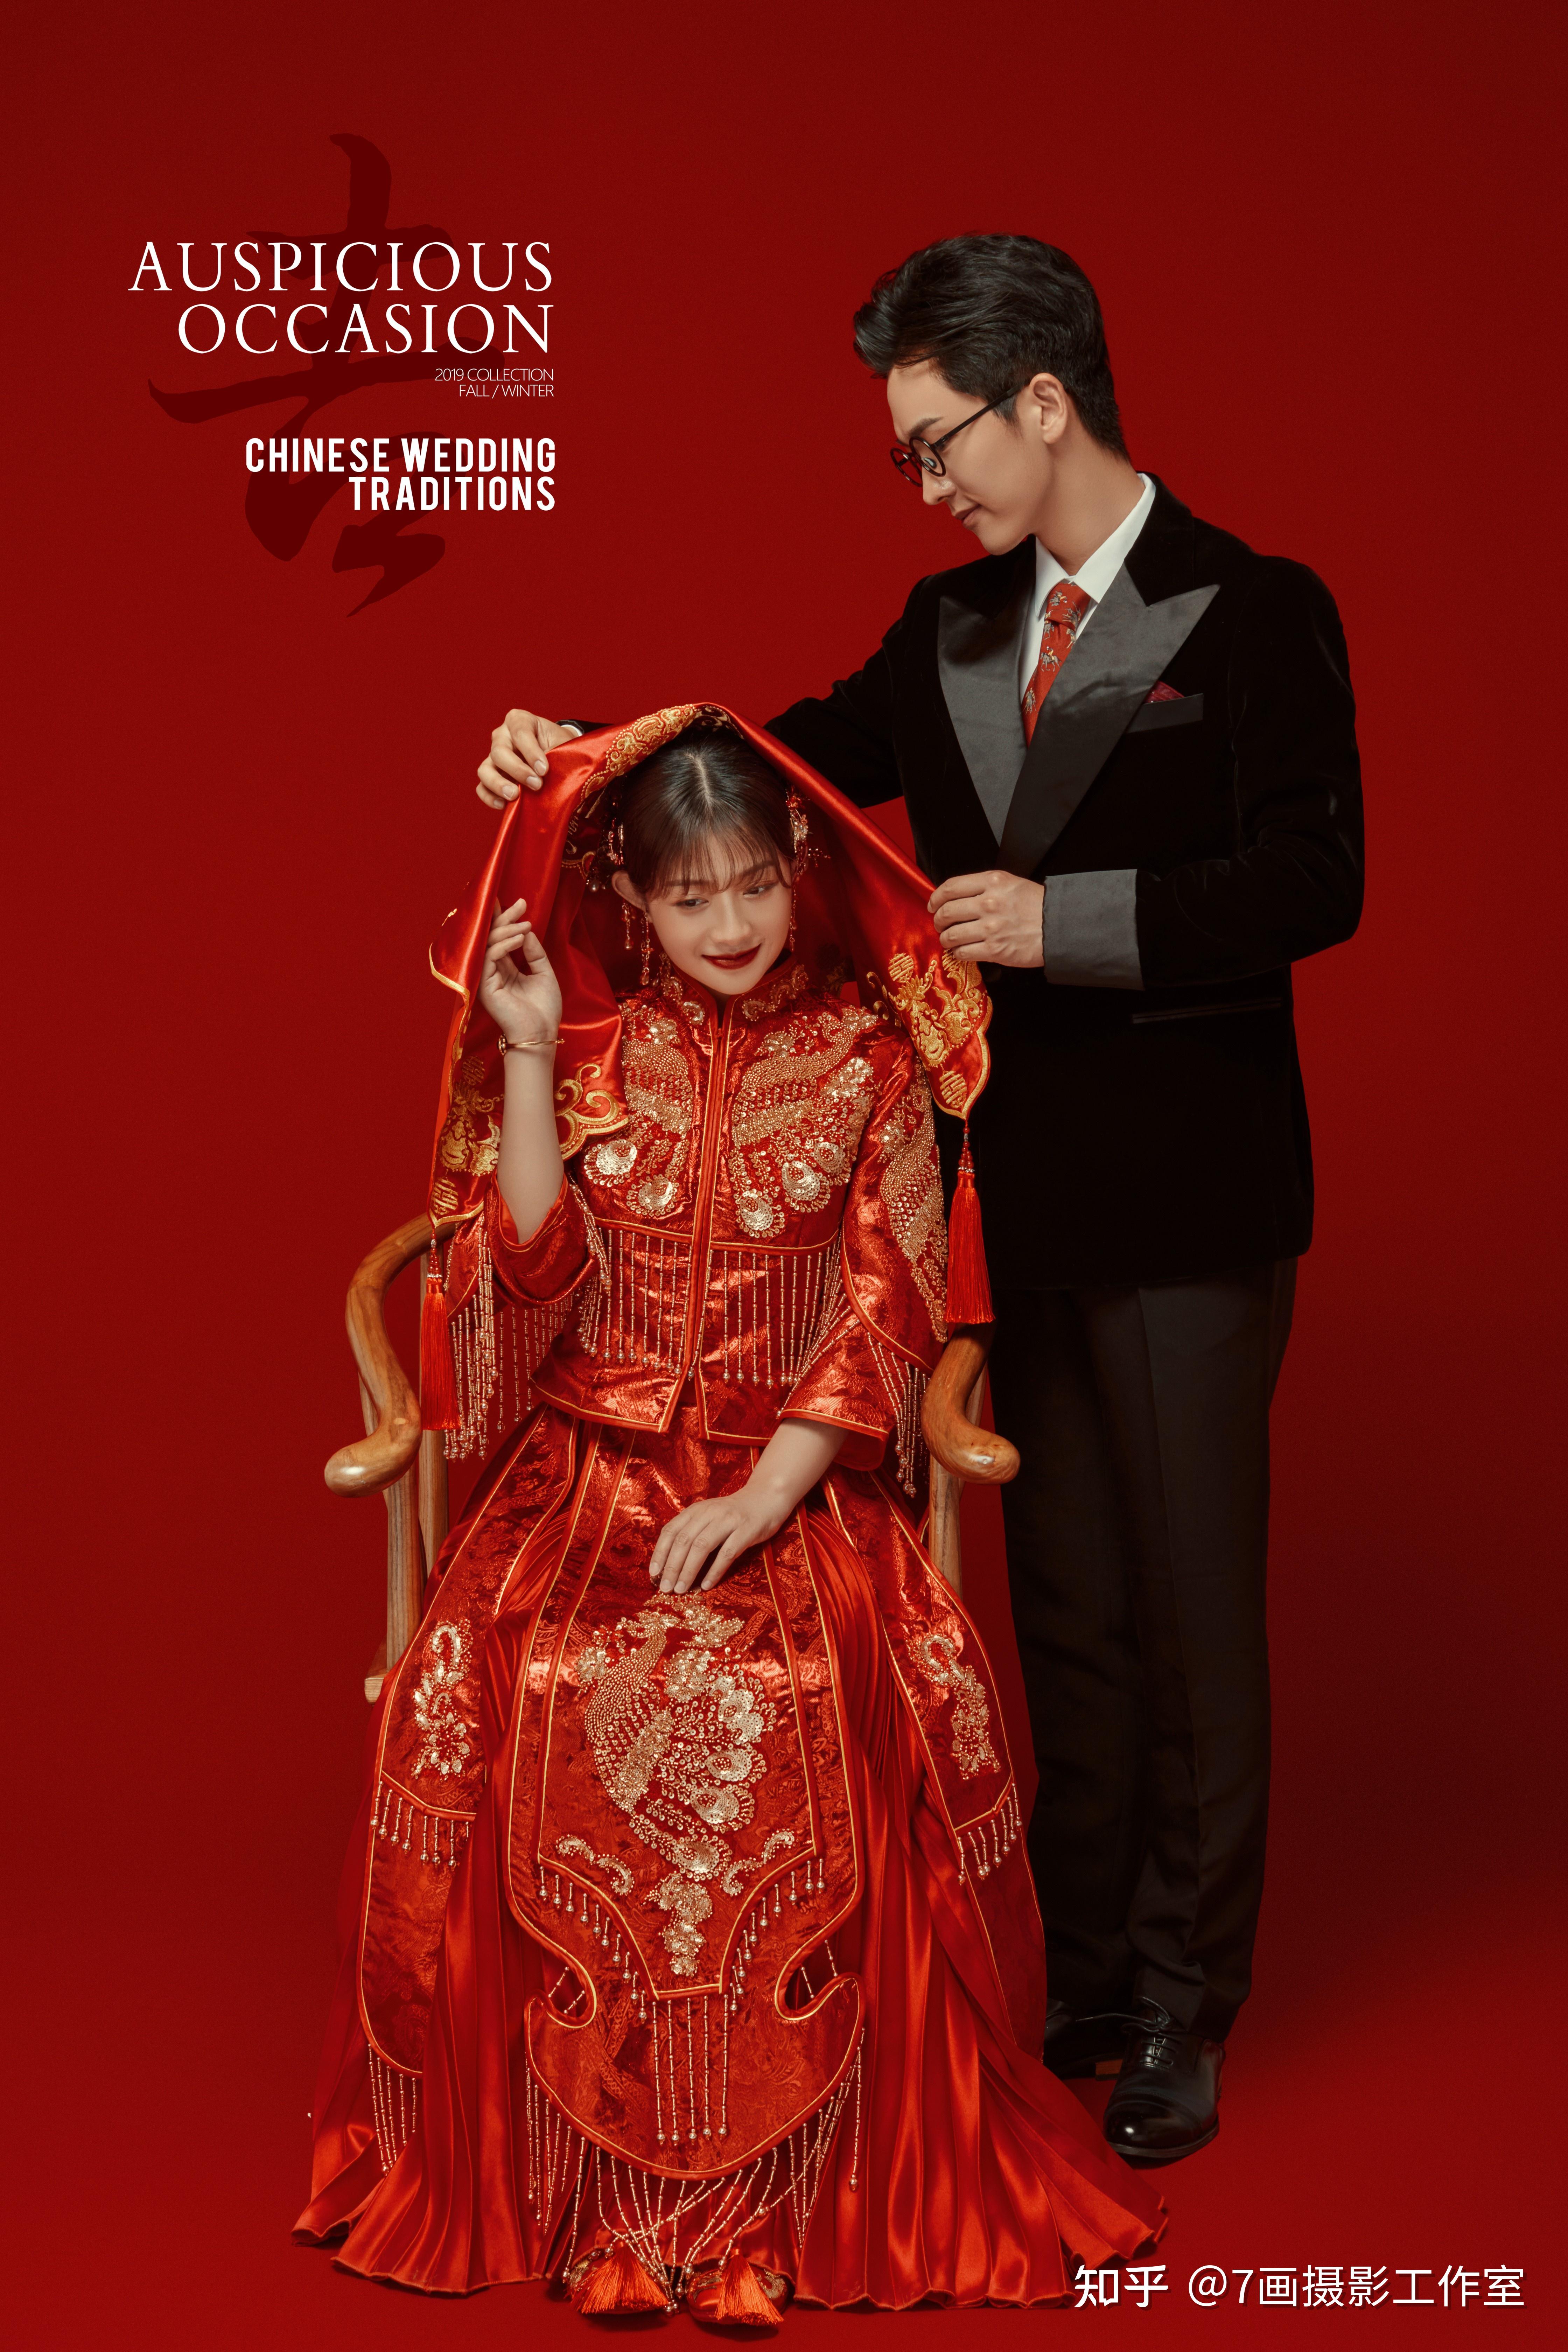 古典中式婚纱照～父母都很喜欢哦~您会拍吗?